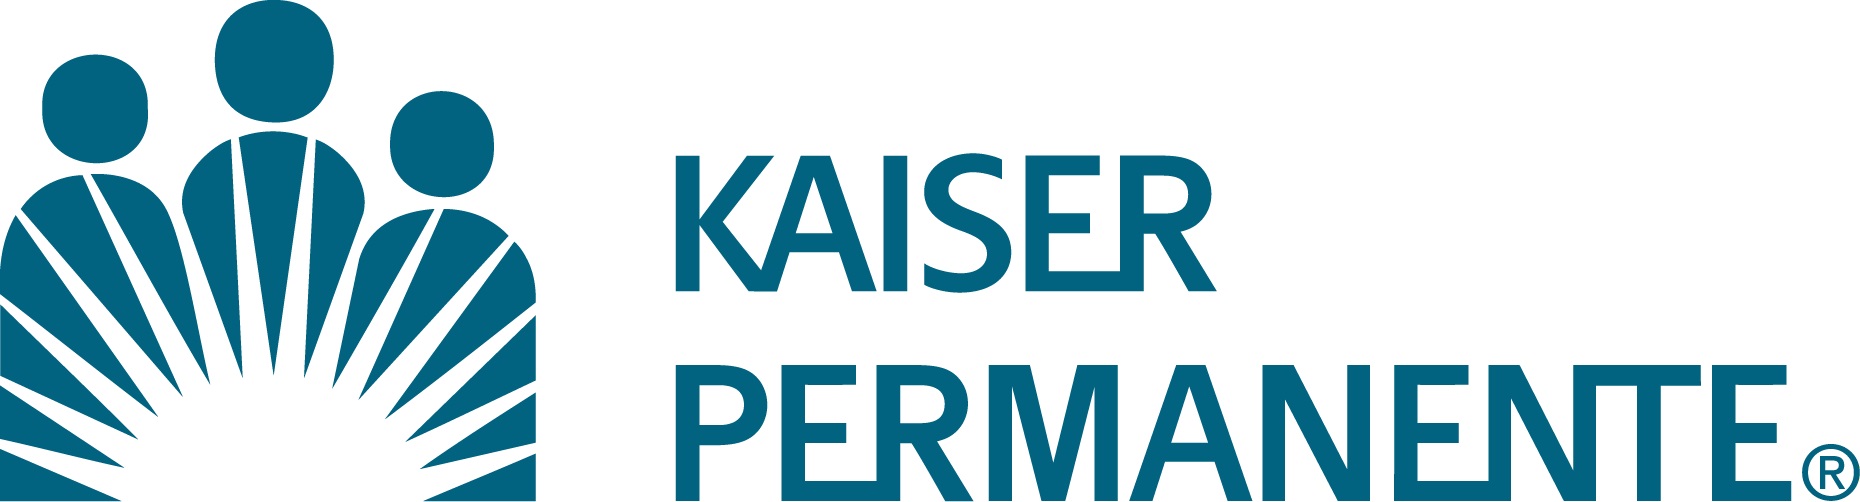 Kaiser_Permanente.jpg